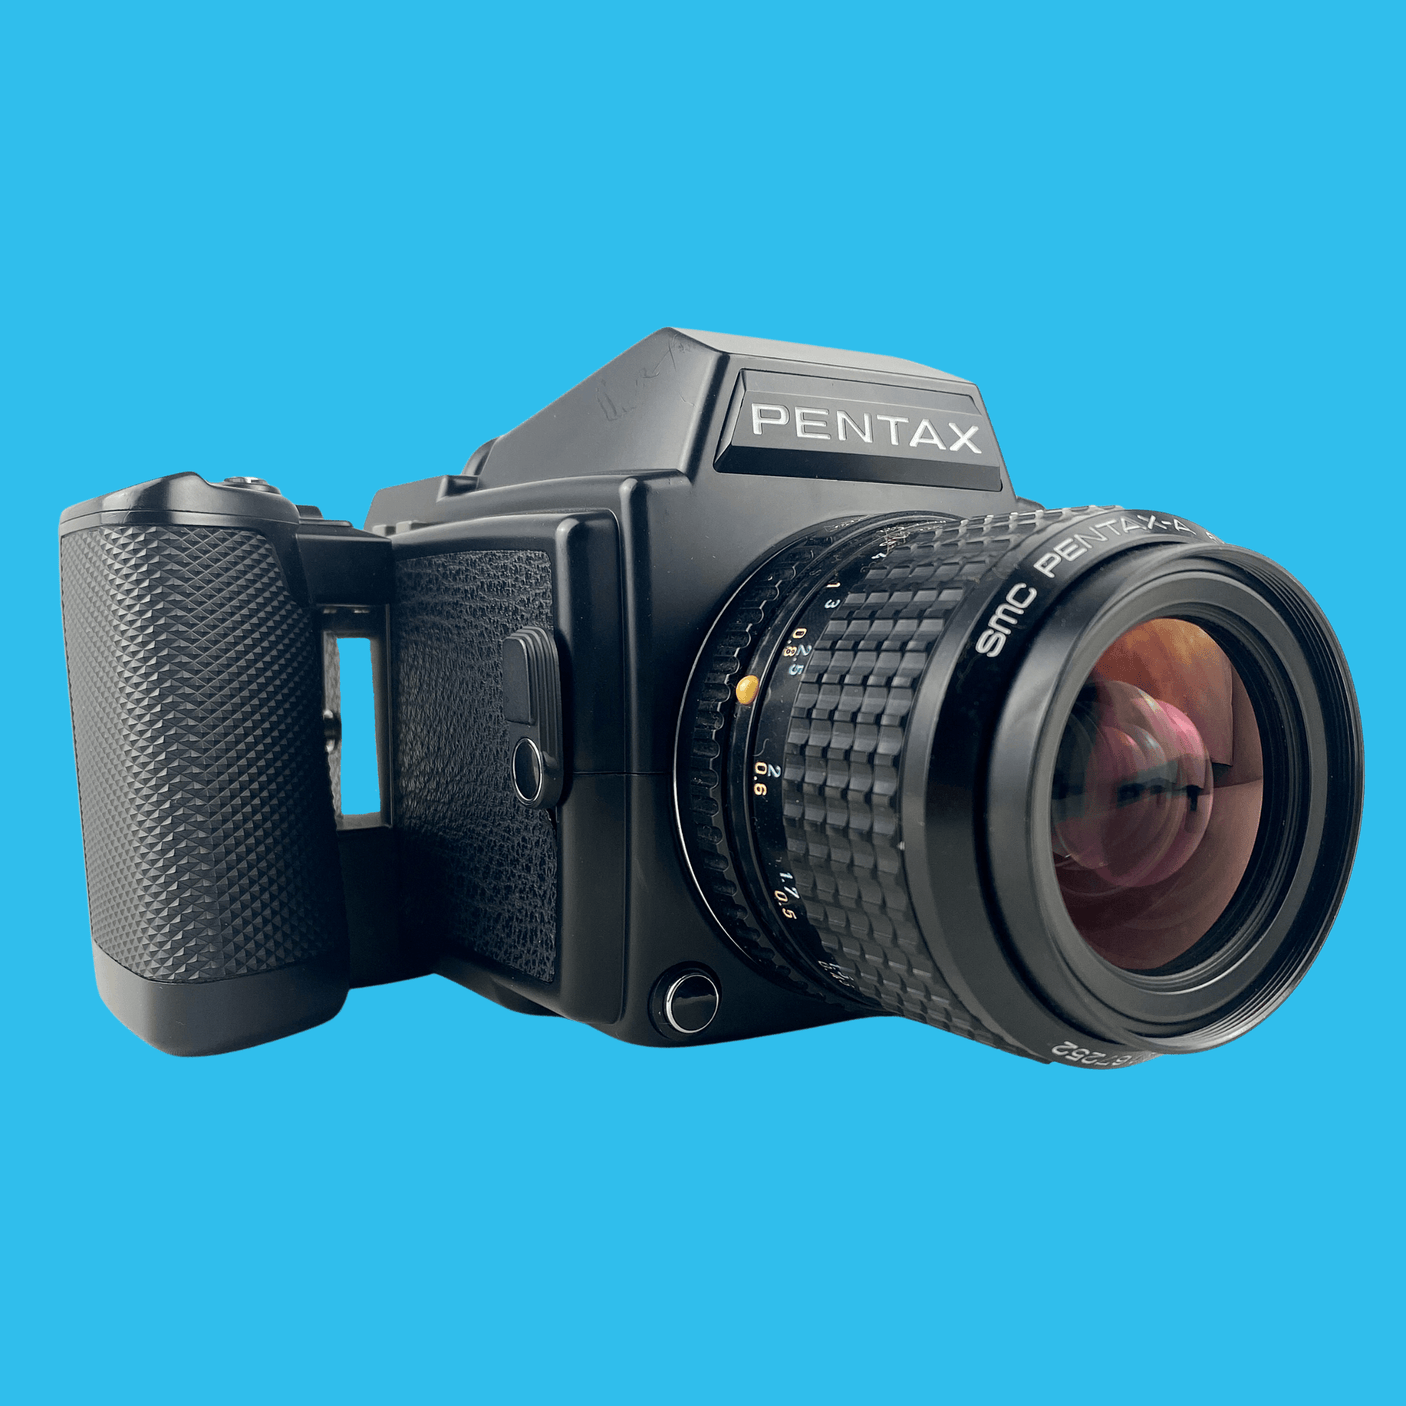 Pentax 645 With 55mm F2.8 Lens. 6X4.5 Medium Format Film Camera.